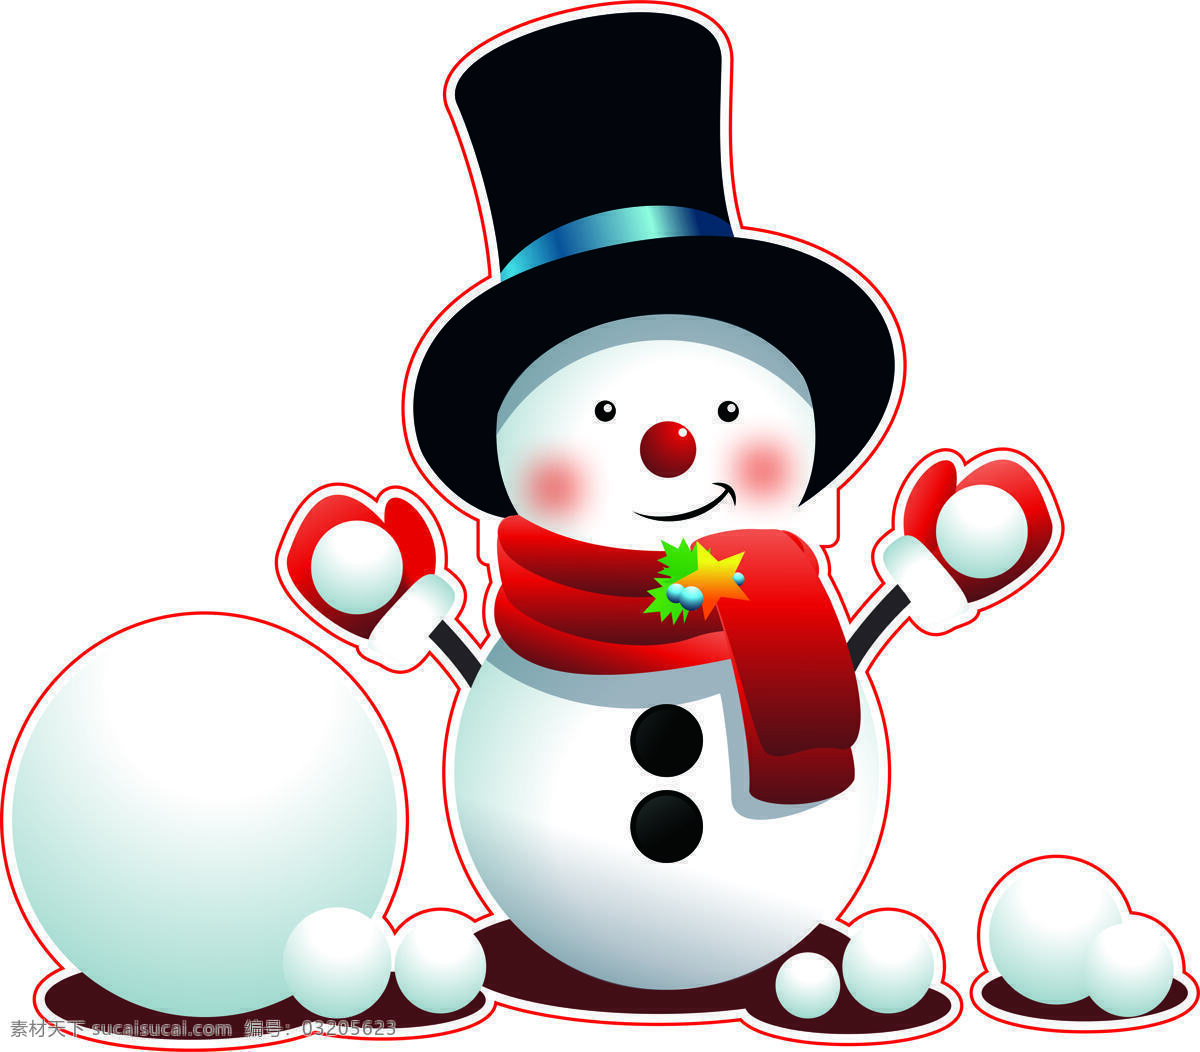 雪人 窗贴 圣诞 雪球 merry christmas 节日 动漫动画 动漫人物